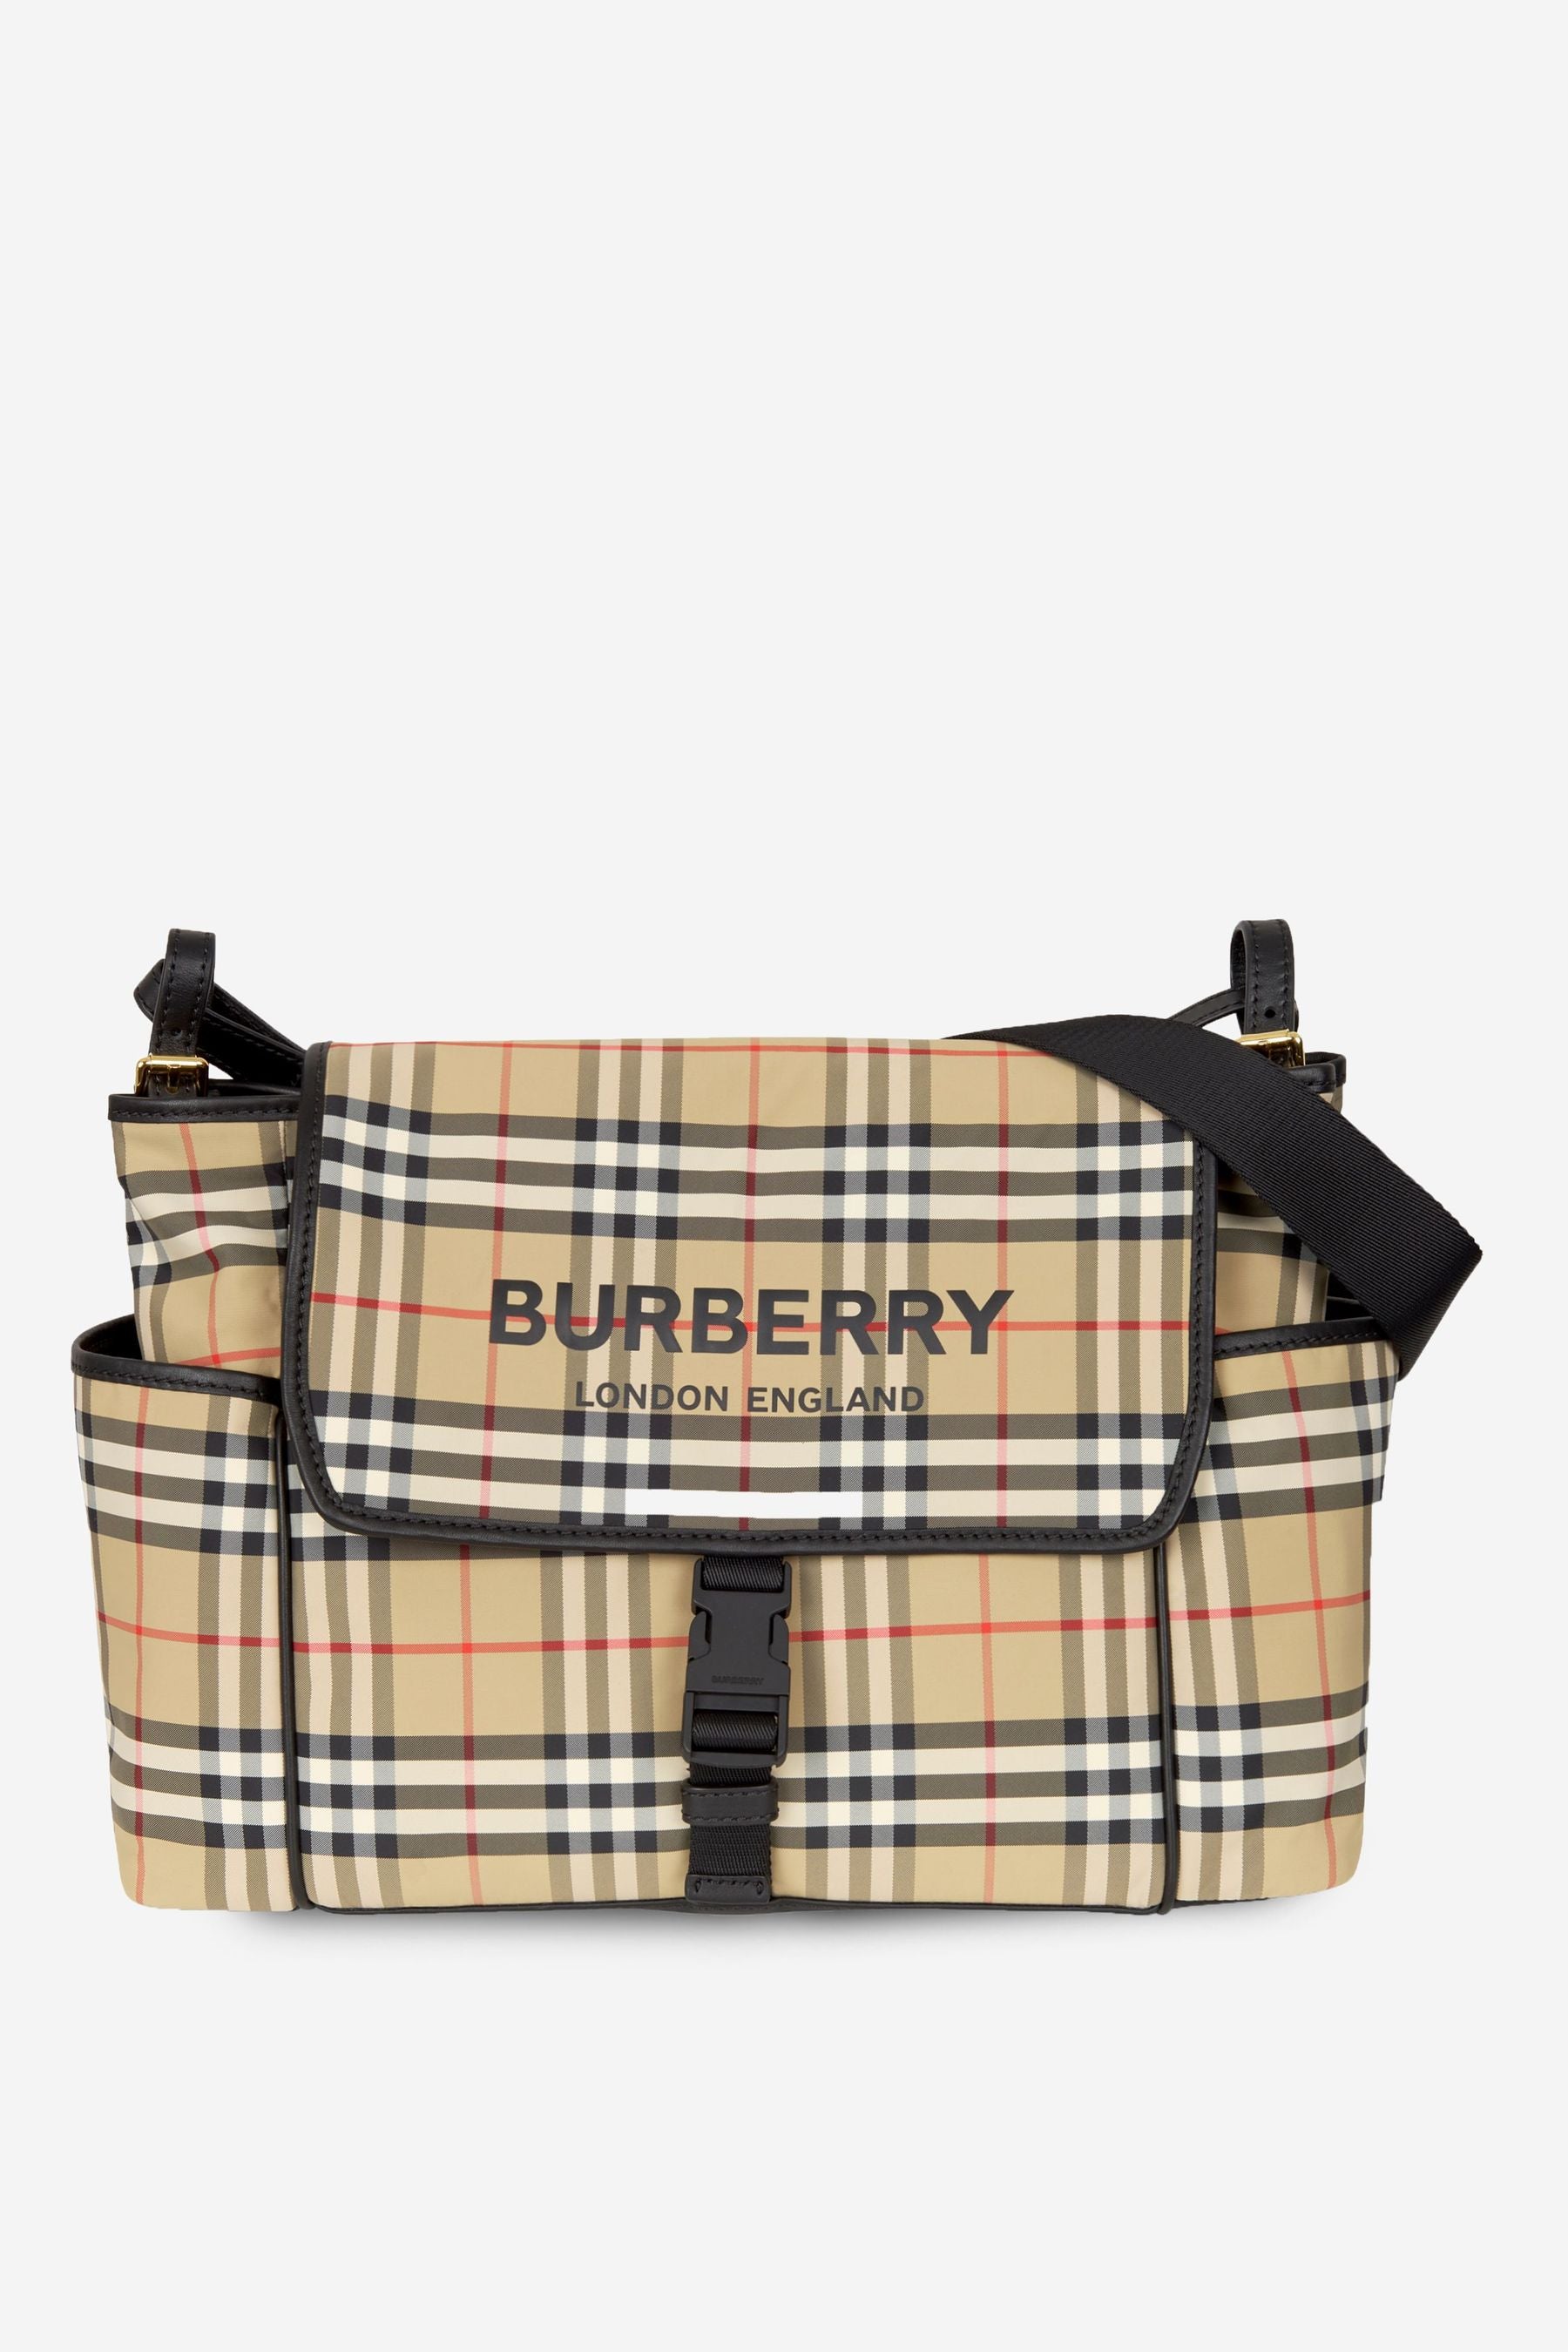 burberry diaper bag